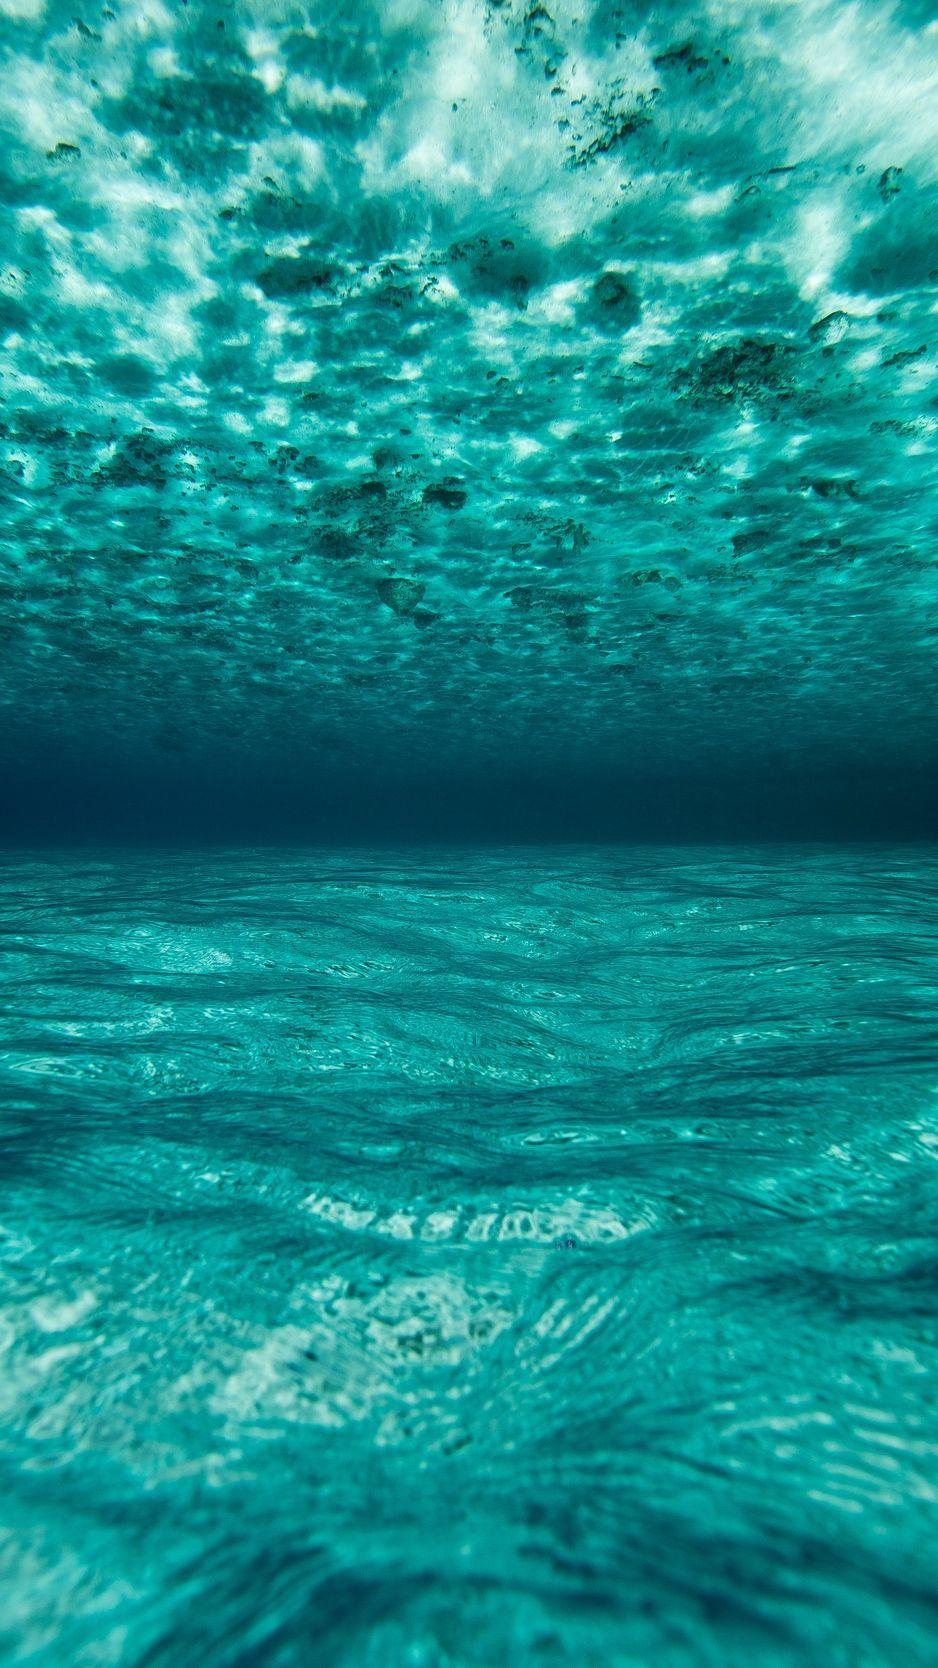 Going Underwater IPhone Wallpaper  IPhone Wallpapers  iPhone Wallpapers